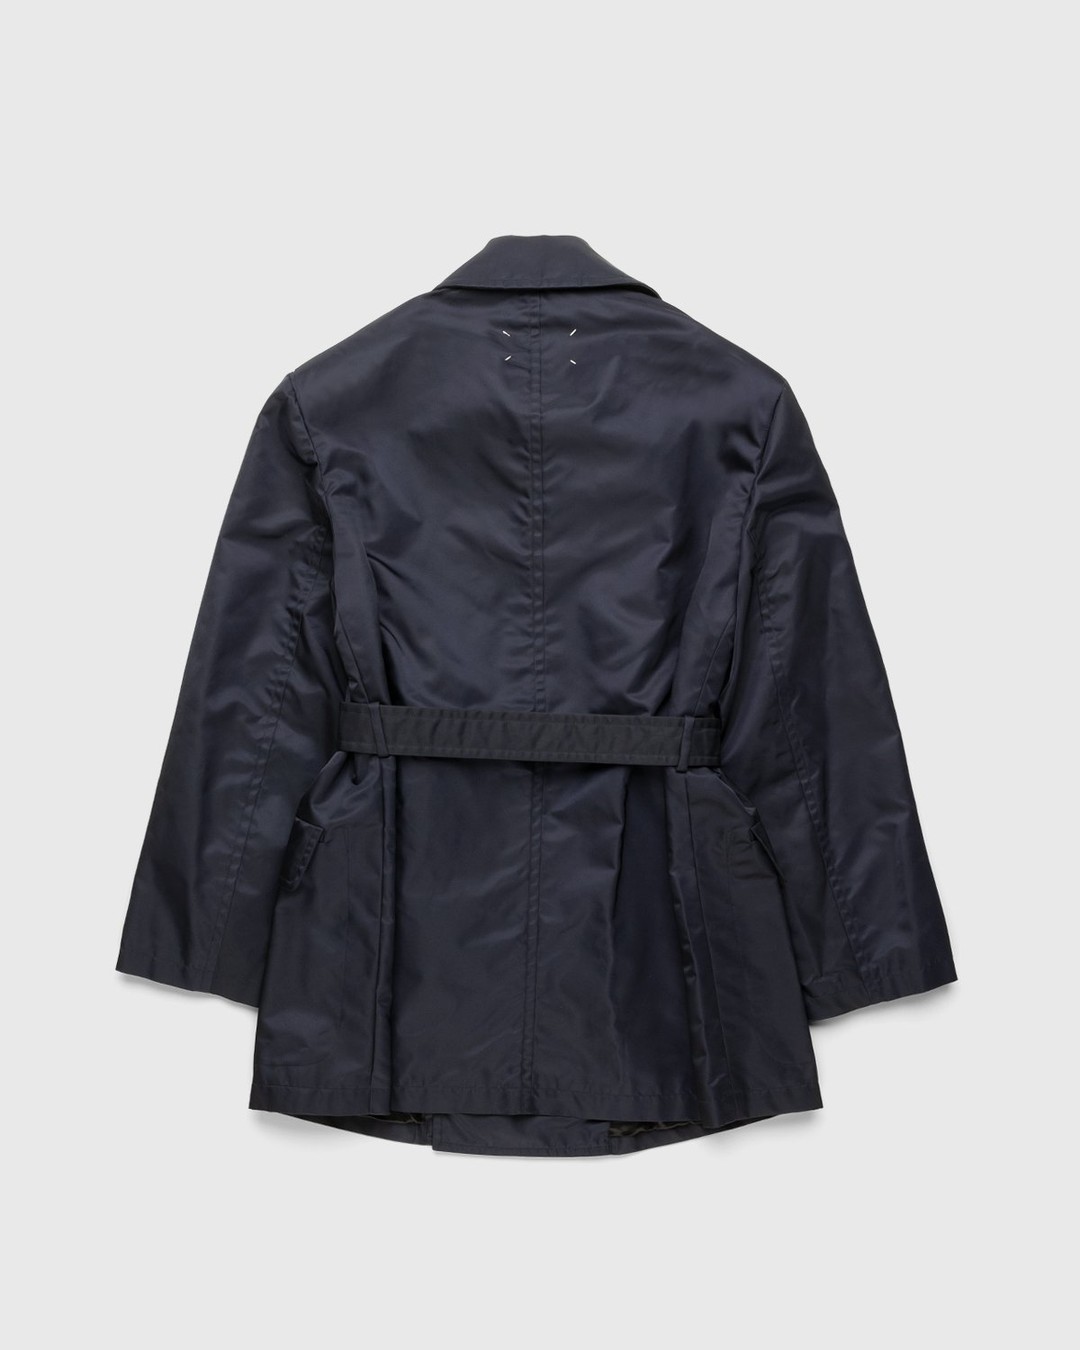 Maison Margiela – Sports Jacket Navy - Outerwear - Blue - Image 2